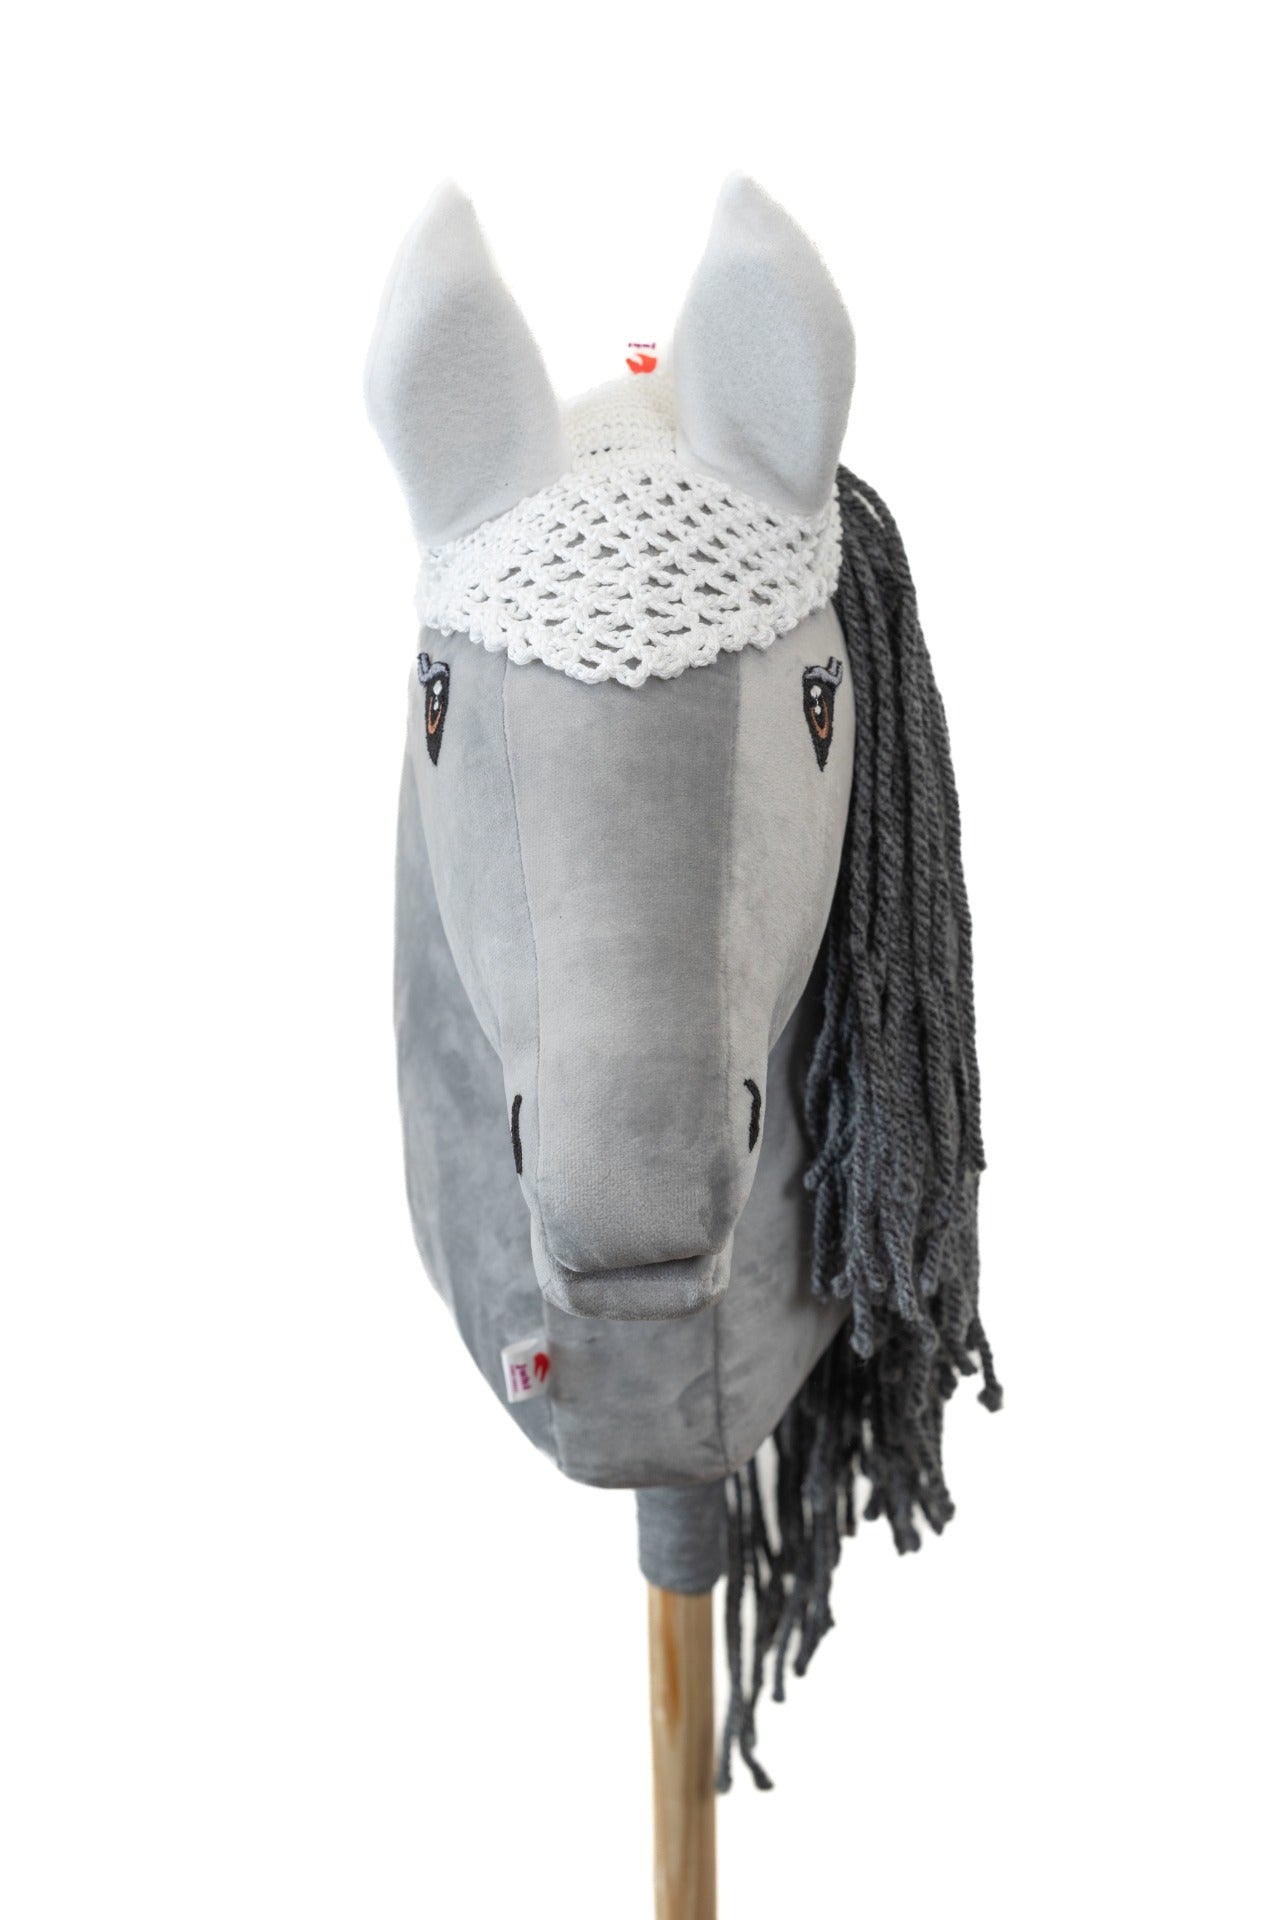 Ear net crocheted - White - Foal